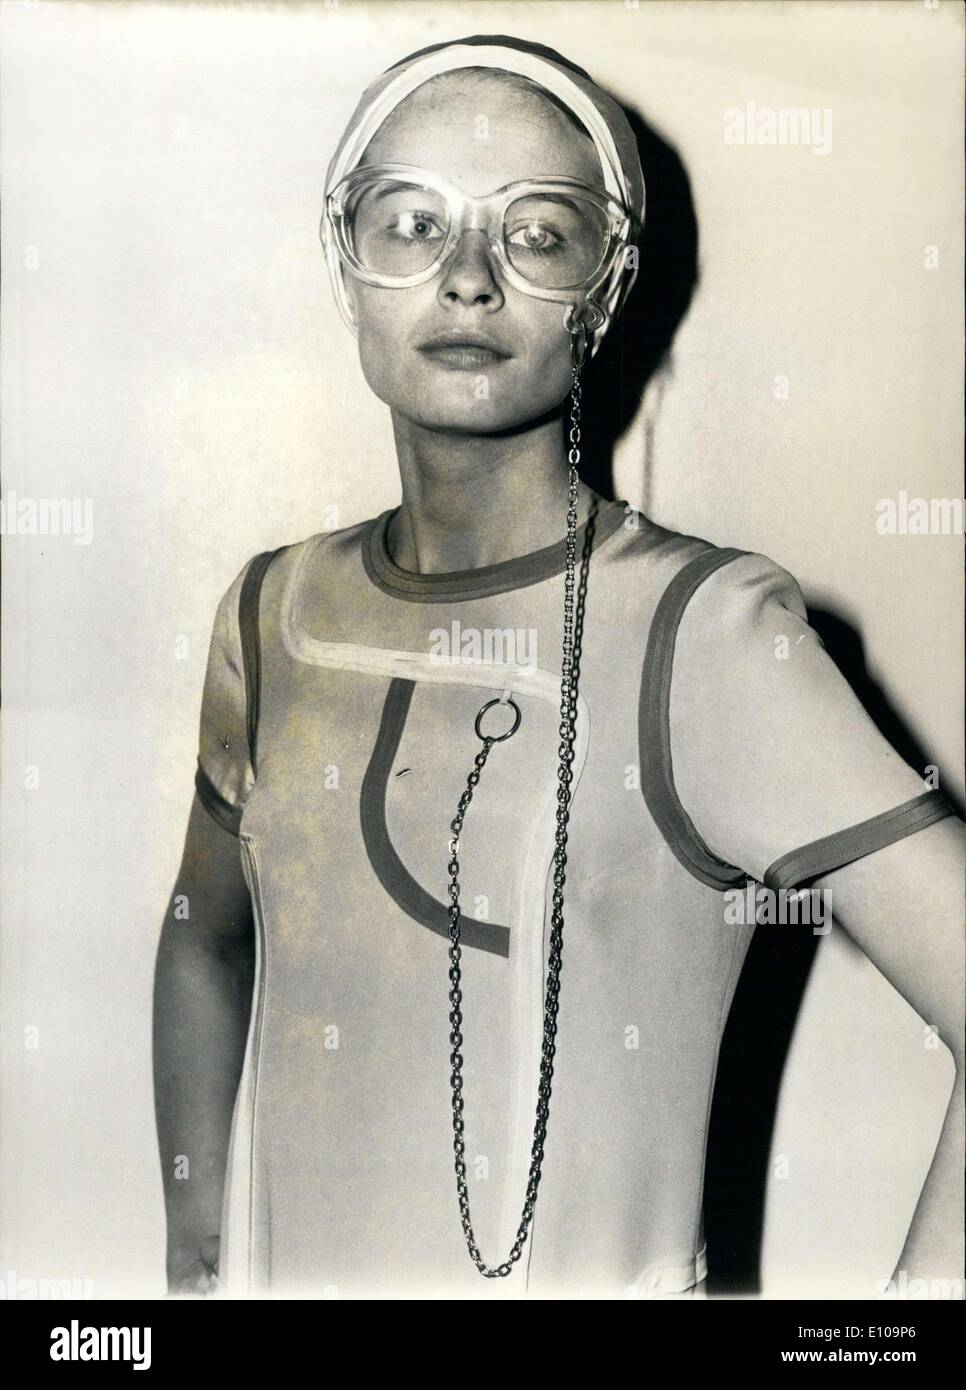 Marzo 23, 1970 - Un nuevo accesorio de moda para sus gafas de Louis Feraud Foto de stock